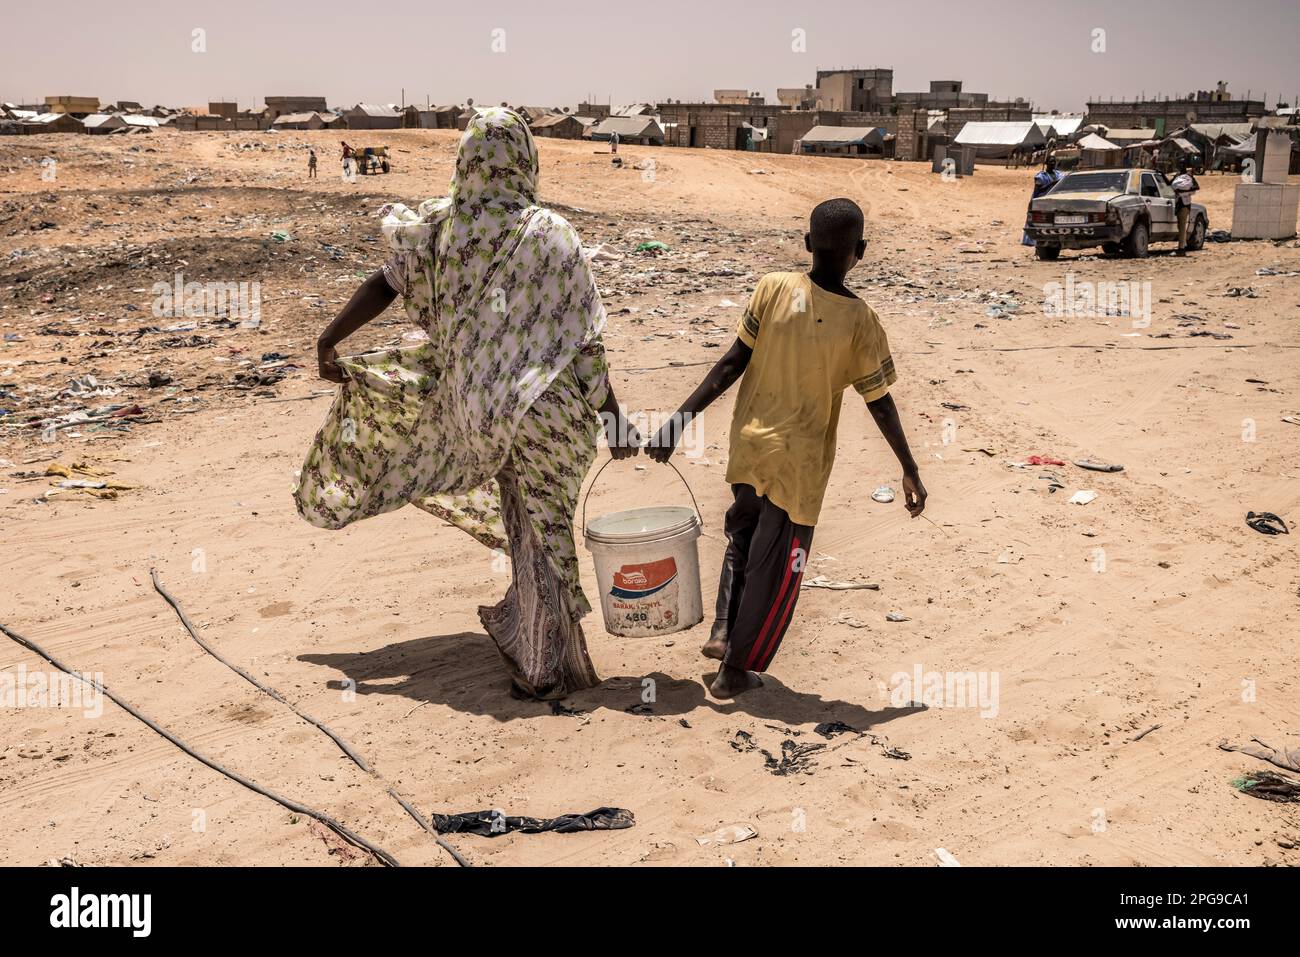 Punto d'acqua nel quartiere povero di Darnaim a Nouakshott, la capitale della Mauritania. La maggior parte delle persone che vivono qui provengono dalla tribù Haratin, che sono svantaggiate per molti aspetti, come le opportunità educative. Lo stato è una delle 40 contee meno sviluppate del mondo, come stabilito dalle Nazioni Unite. Foto Stock